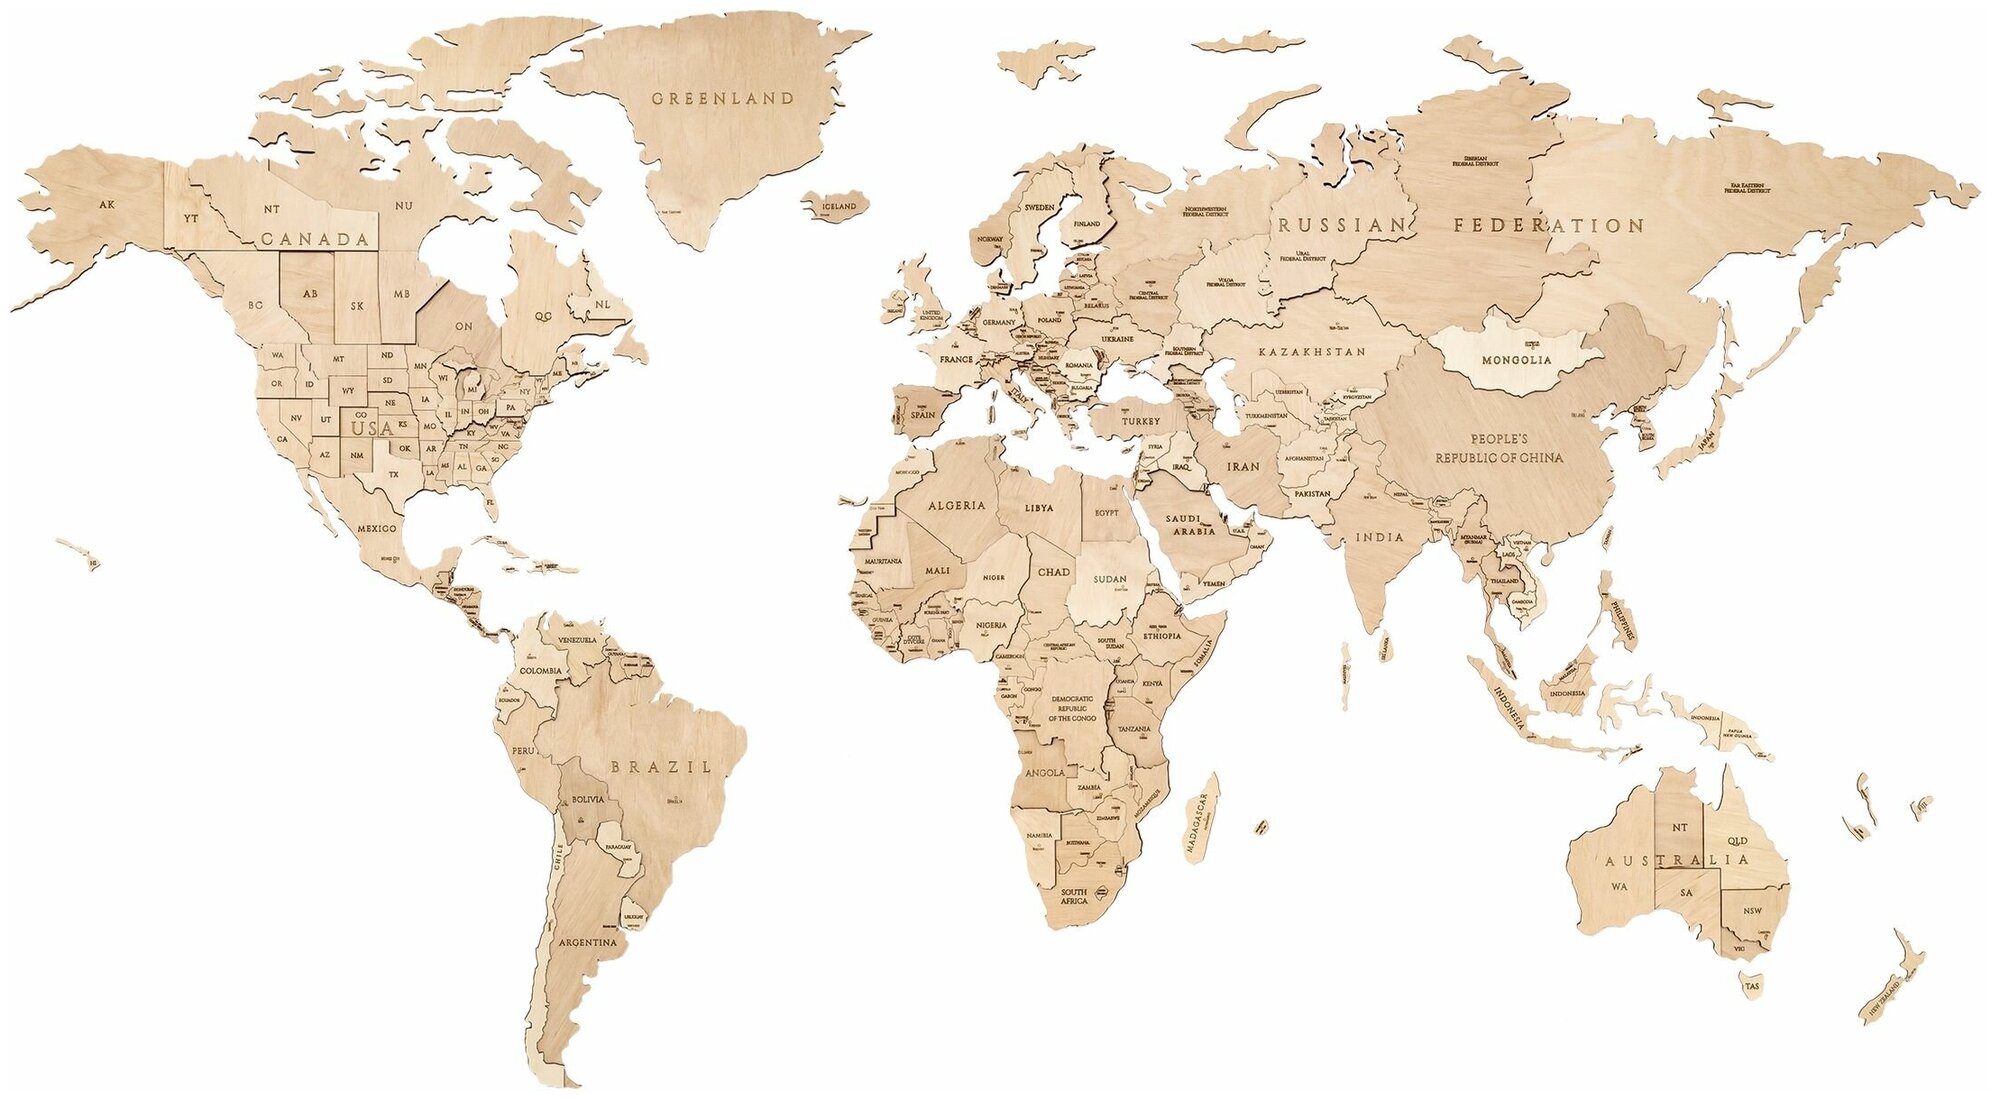 EWA Деревянная Карта Мира настенная, объемная 3 уровня, размер S (100x55 см), цвет натуральный